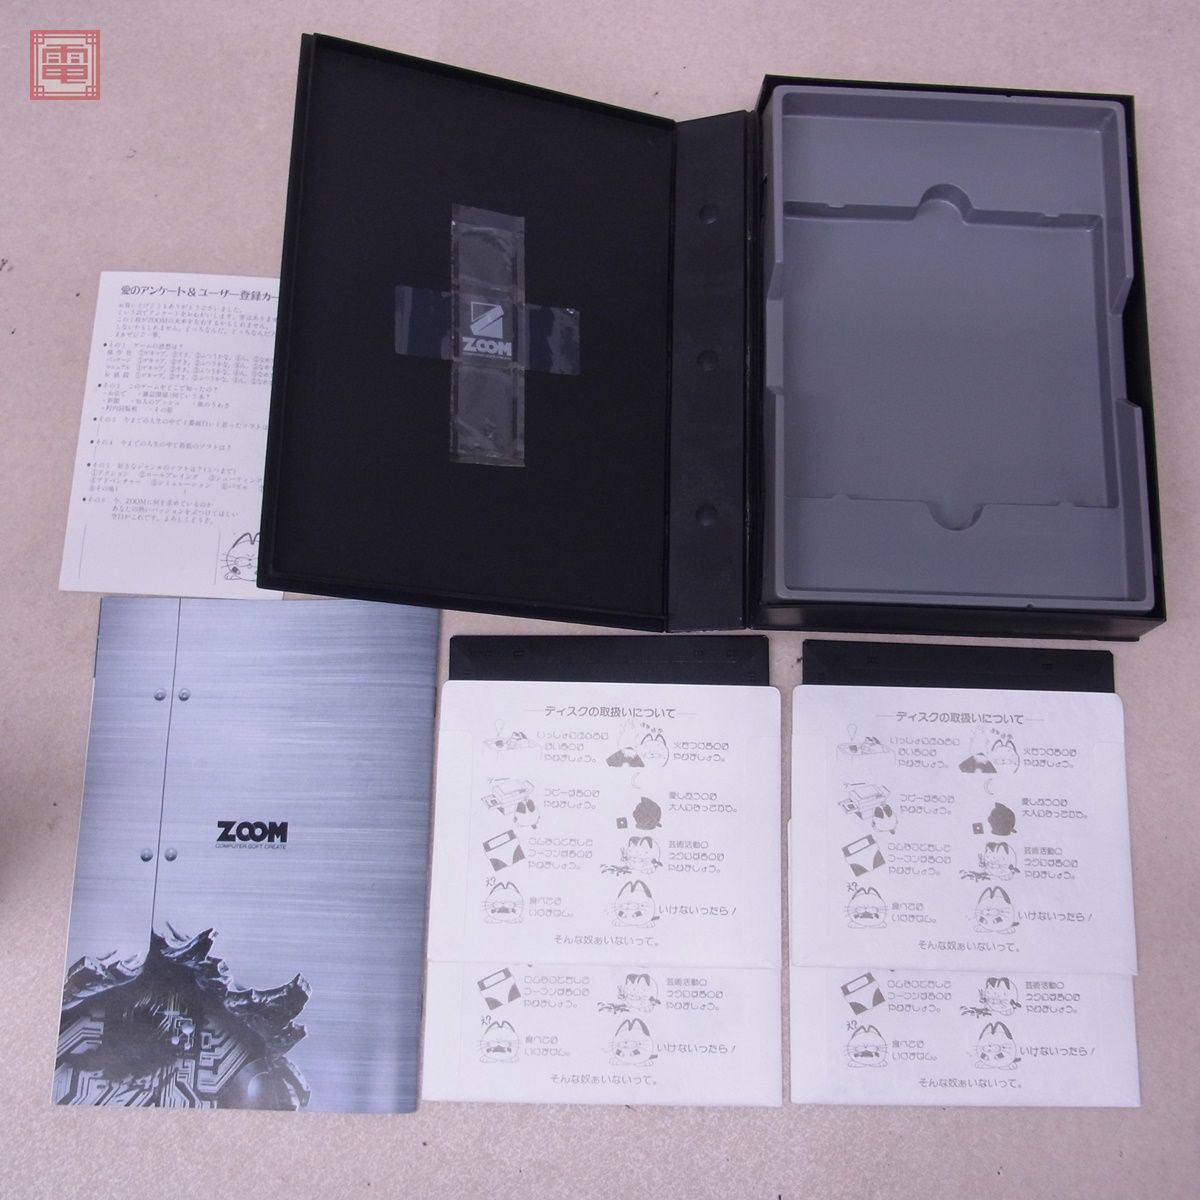 X68000 5 дюймовый FDjeno боковой 1 + 2 совместно 2 шт. комплект GENOCIDE ZOOM коробка мнение есть [20